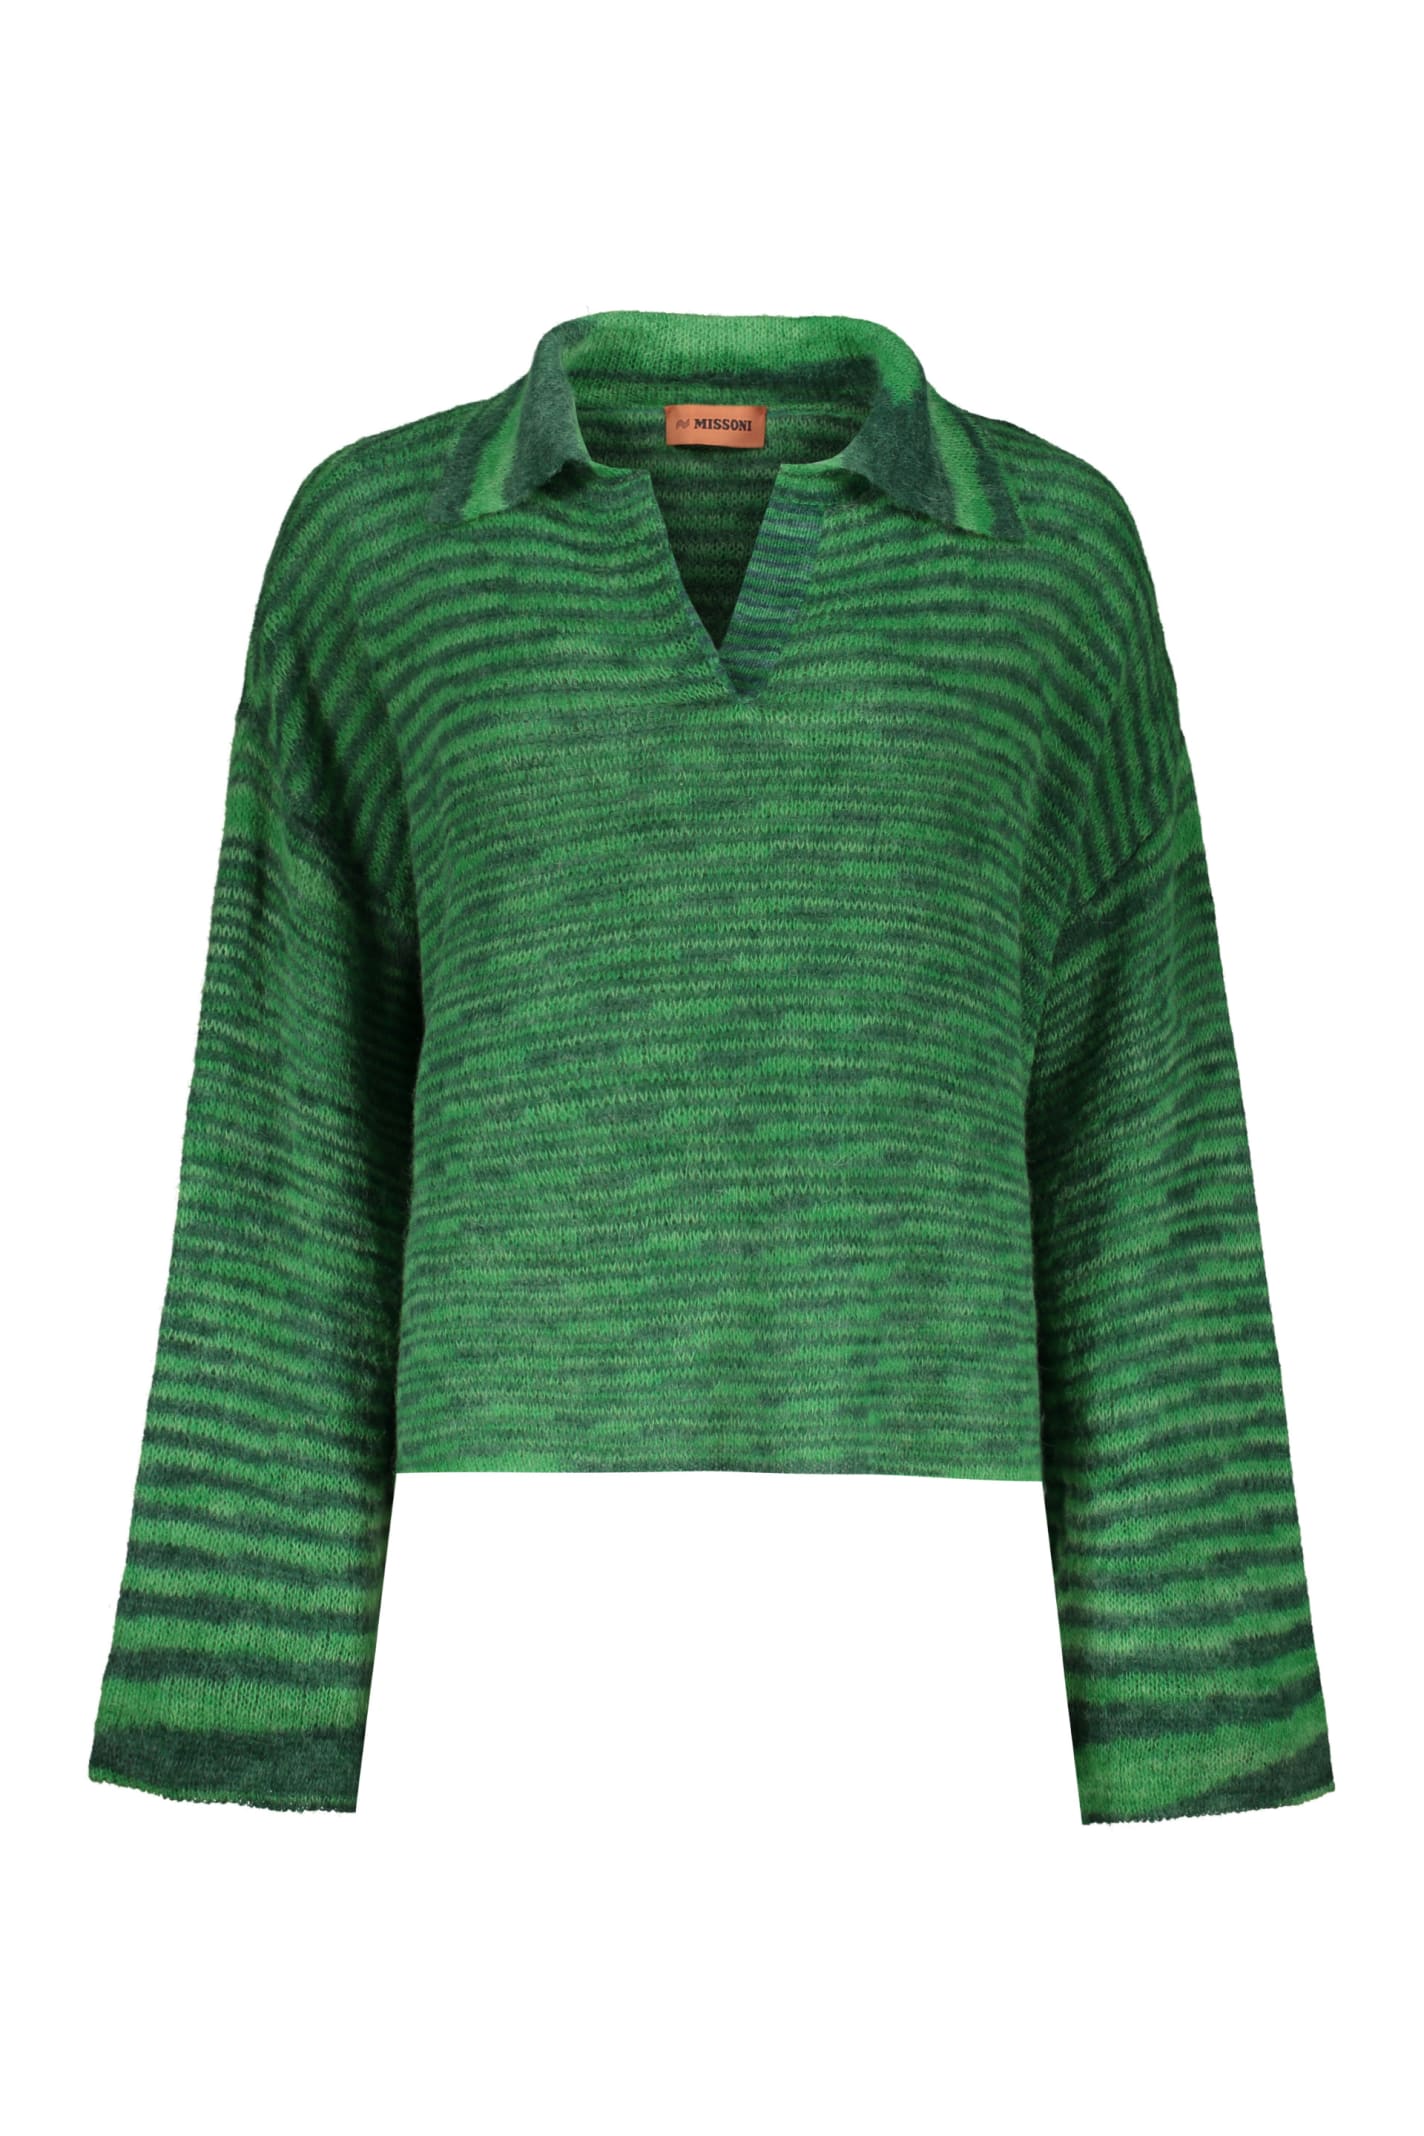 Missoni Wool Blend V-neck Jumper In Green